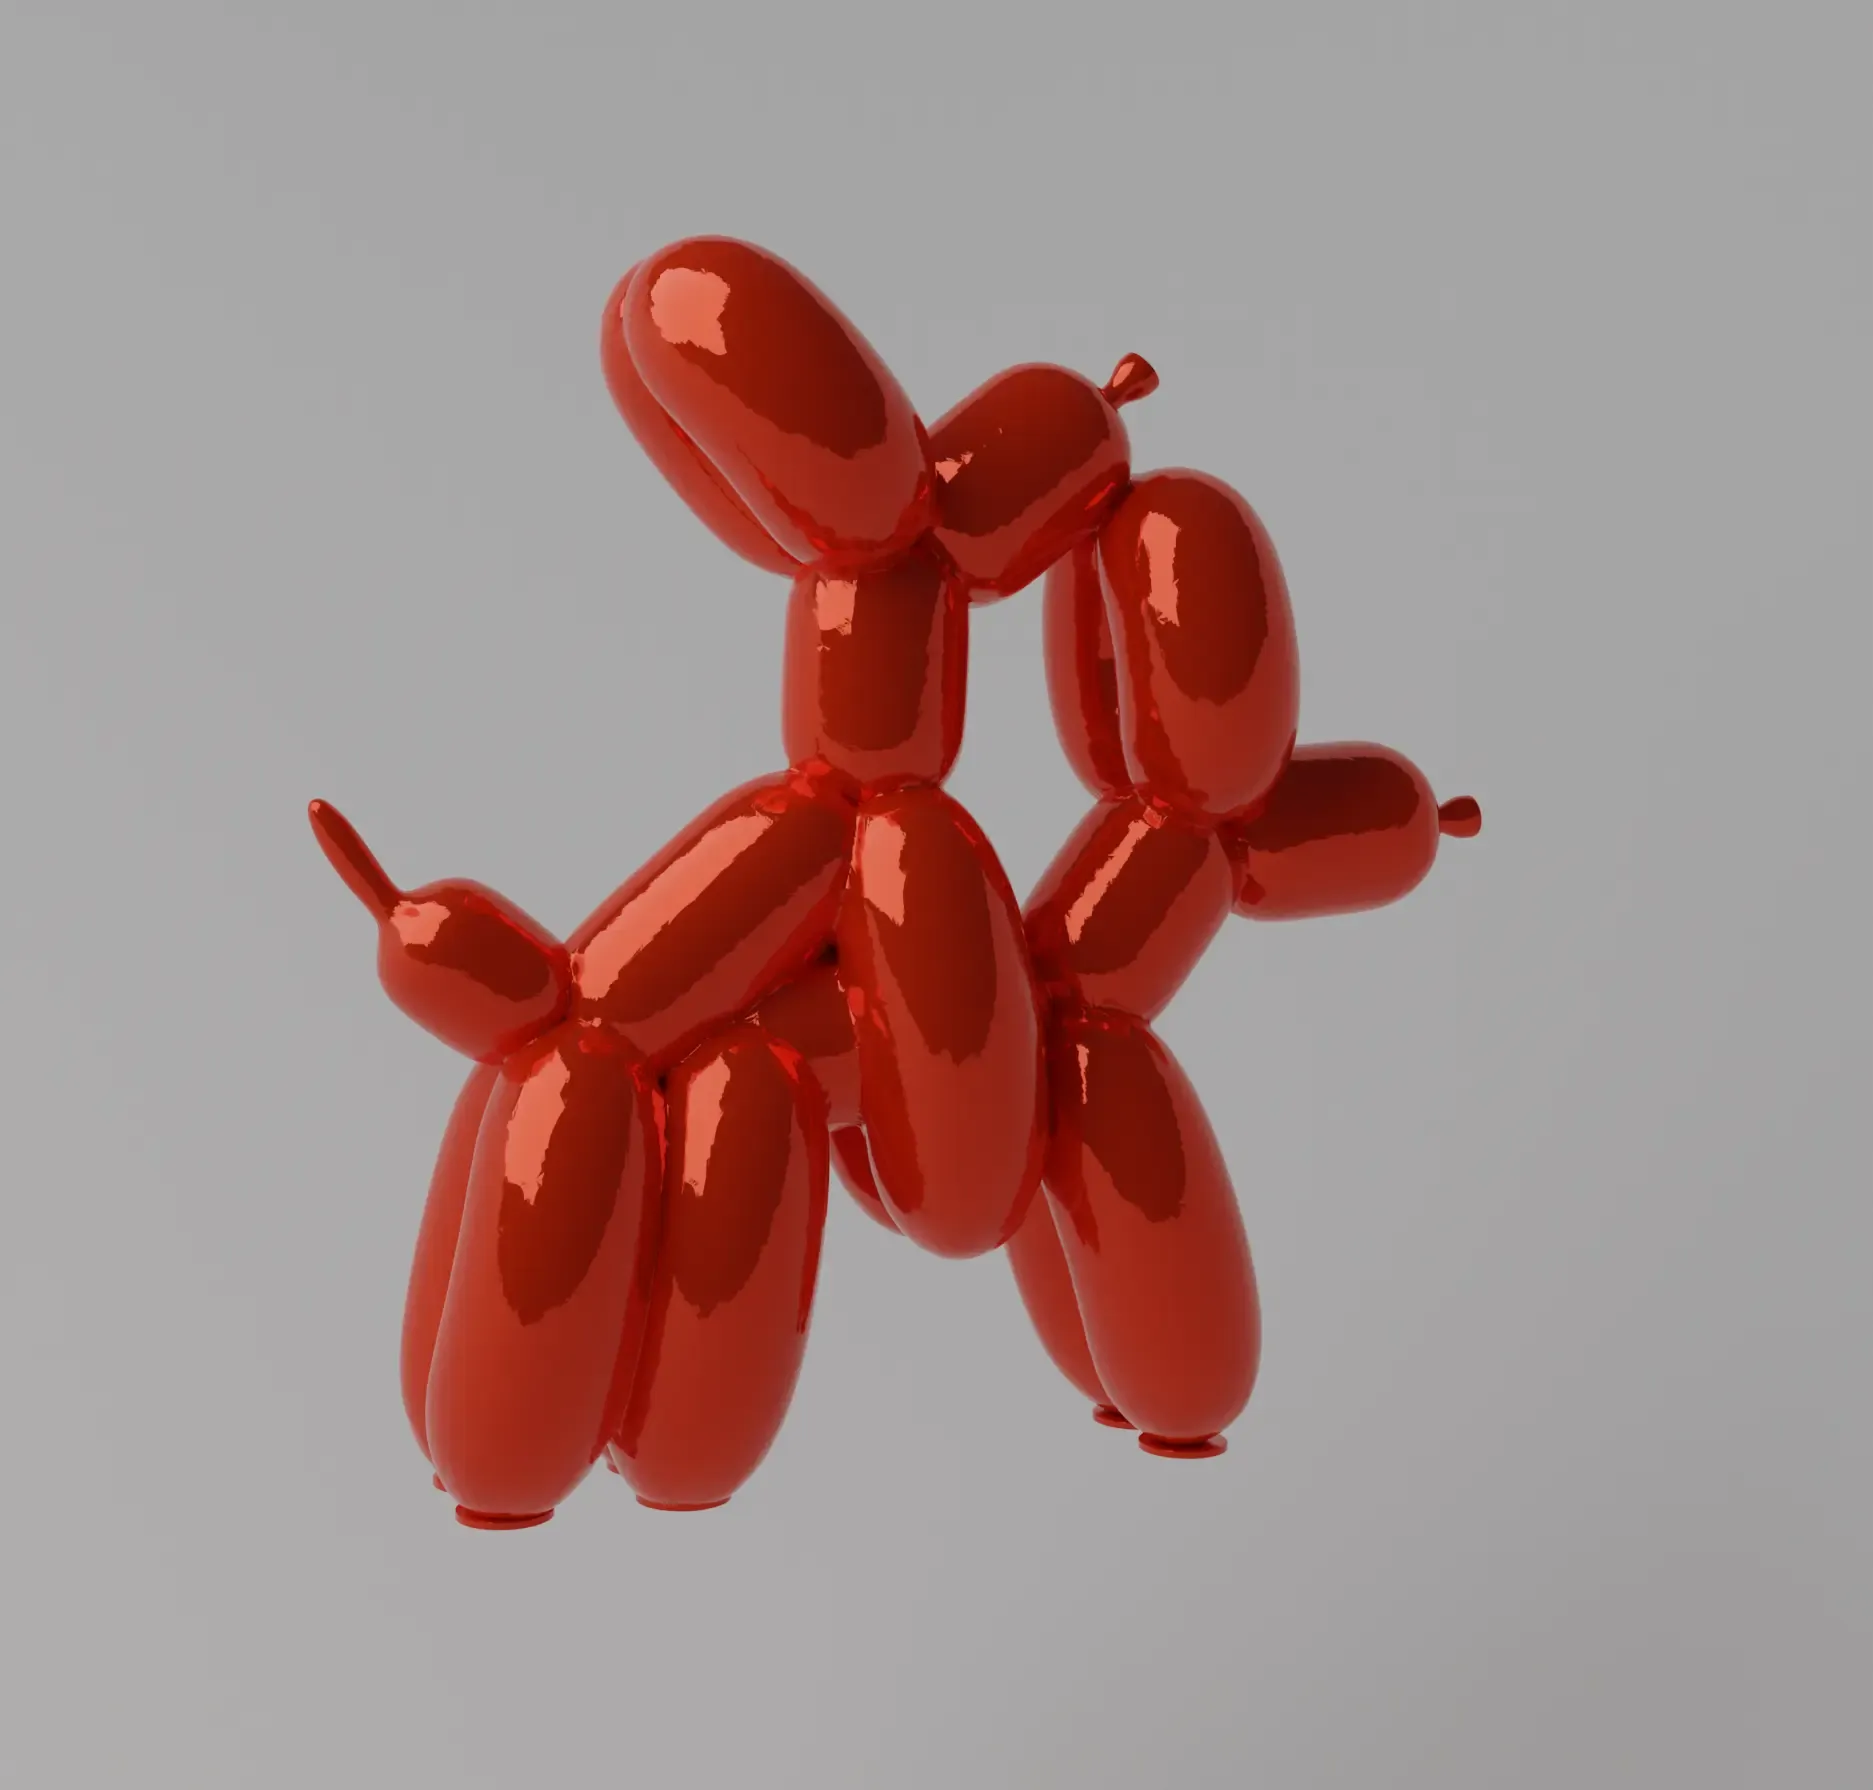 Humpek Balloon Dog Art Toy Fan Art